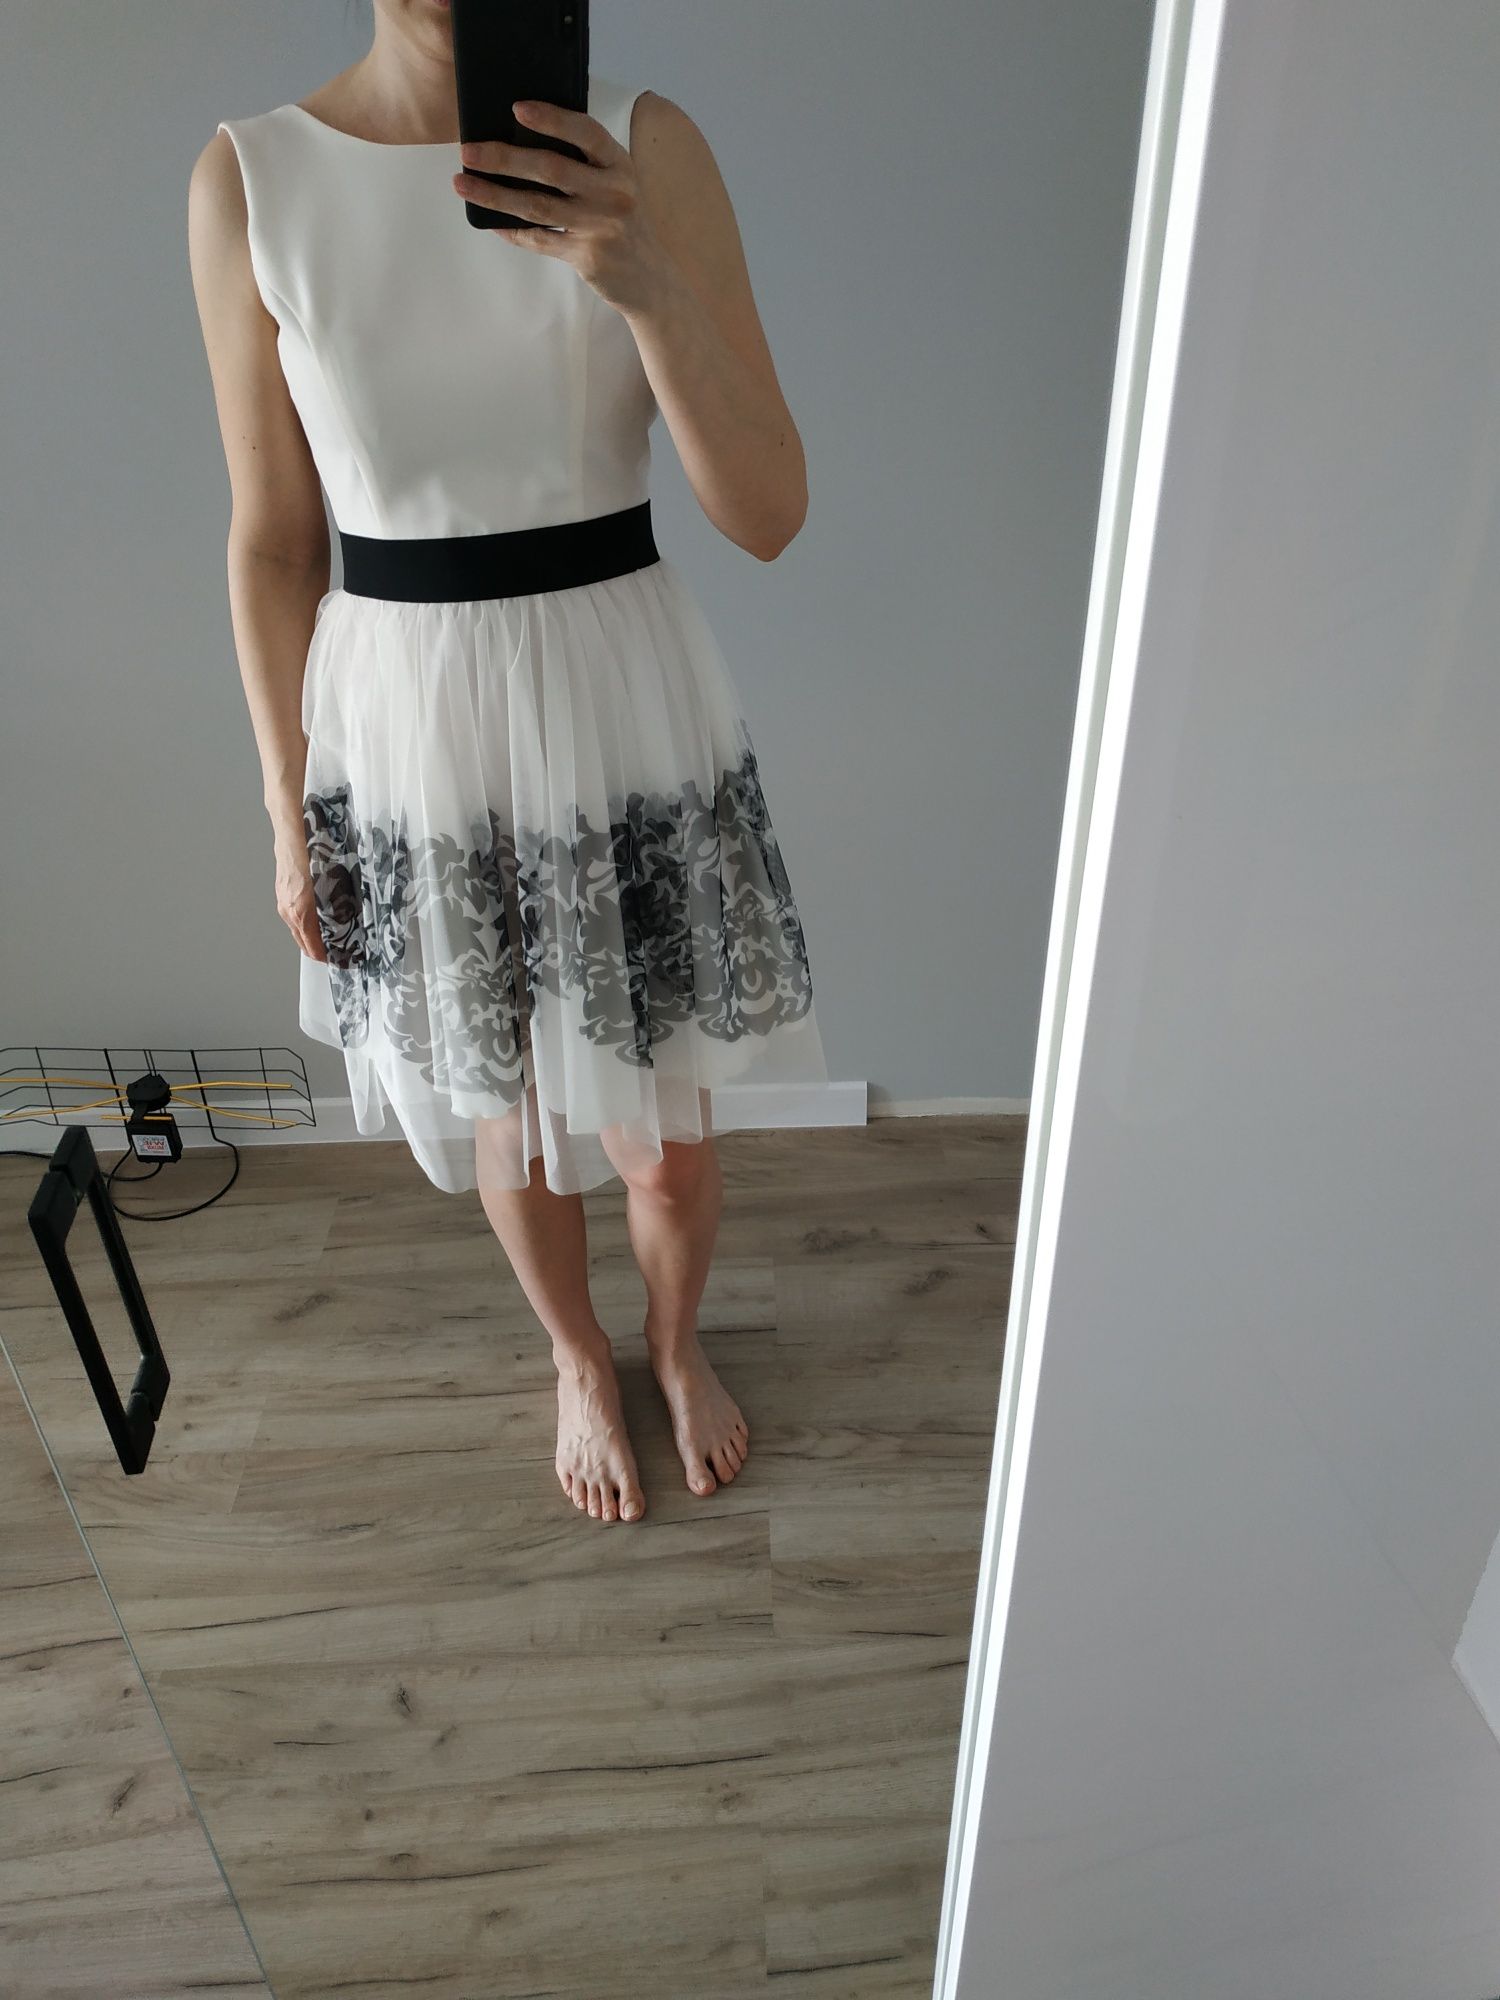 Biała sukienka na poprawiny, panieński lub wesele rozmiar S